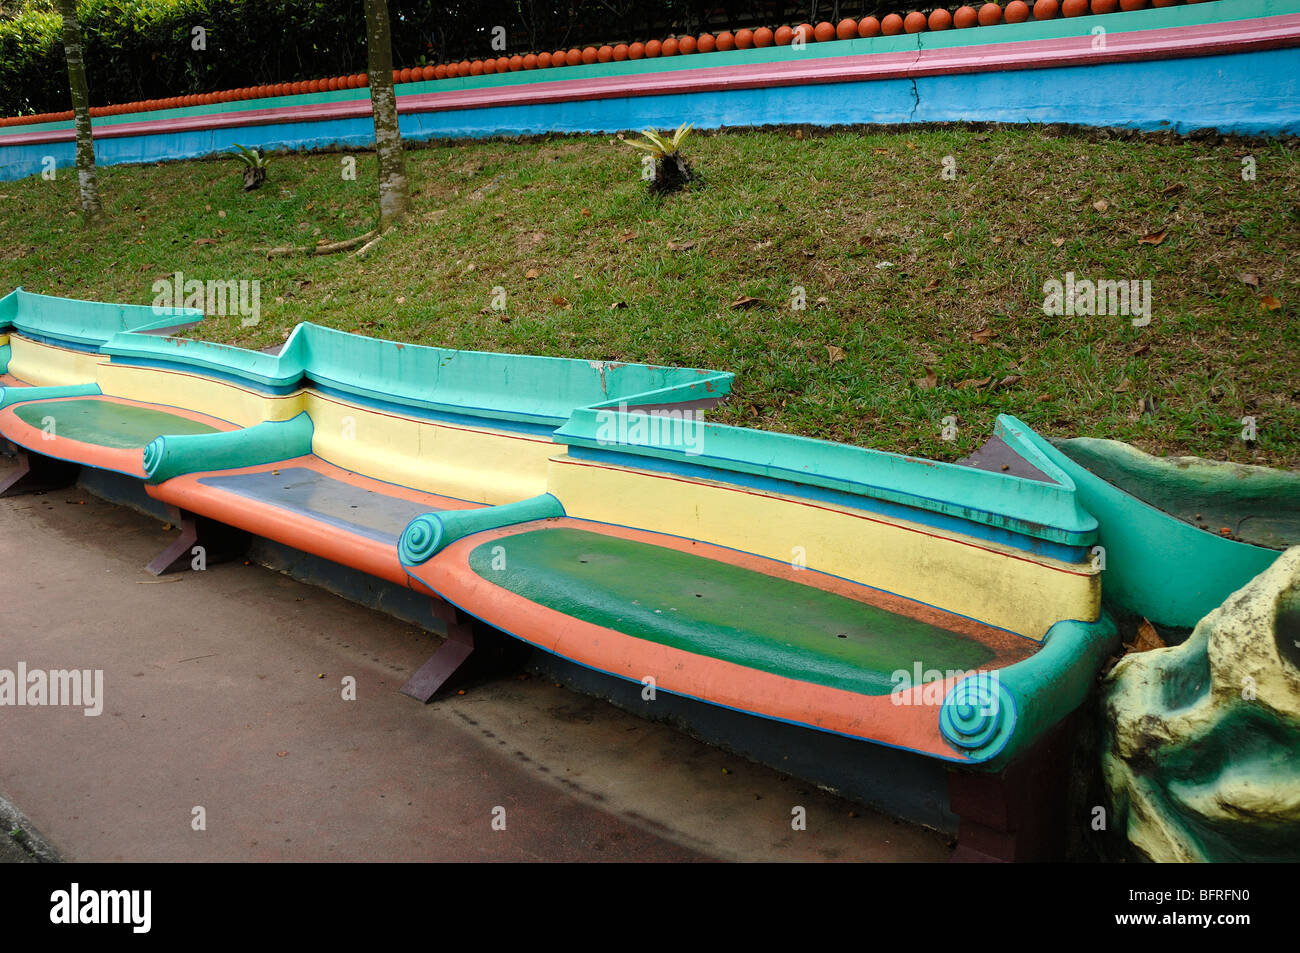 Multicolore o multicolore di cemento dipinta una panchina nel parco, panche o poltrone, Tiger Balm Gardens Chinese Theme Park, Singapore Foto Stock